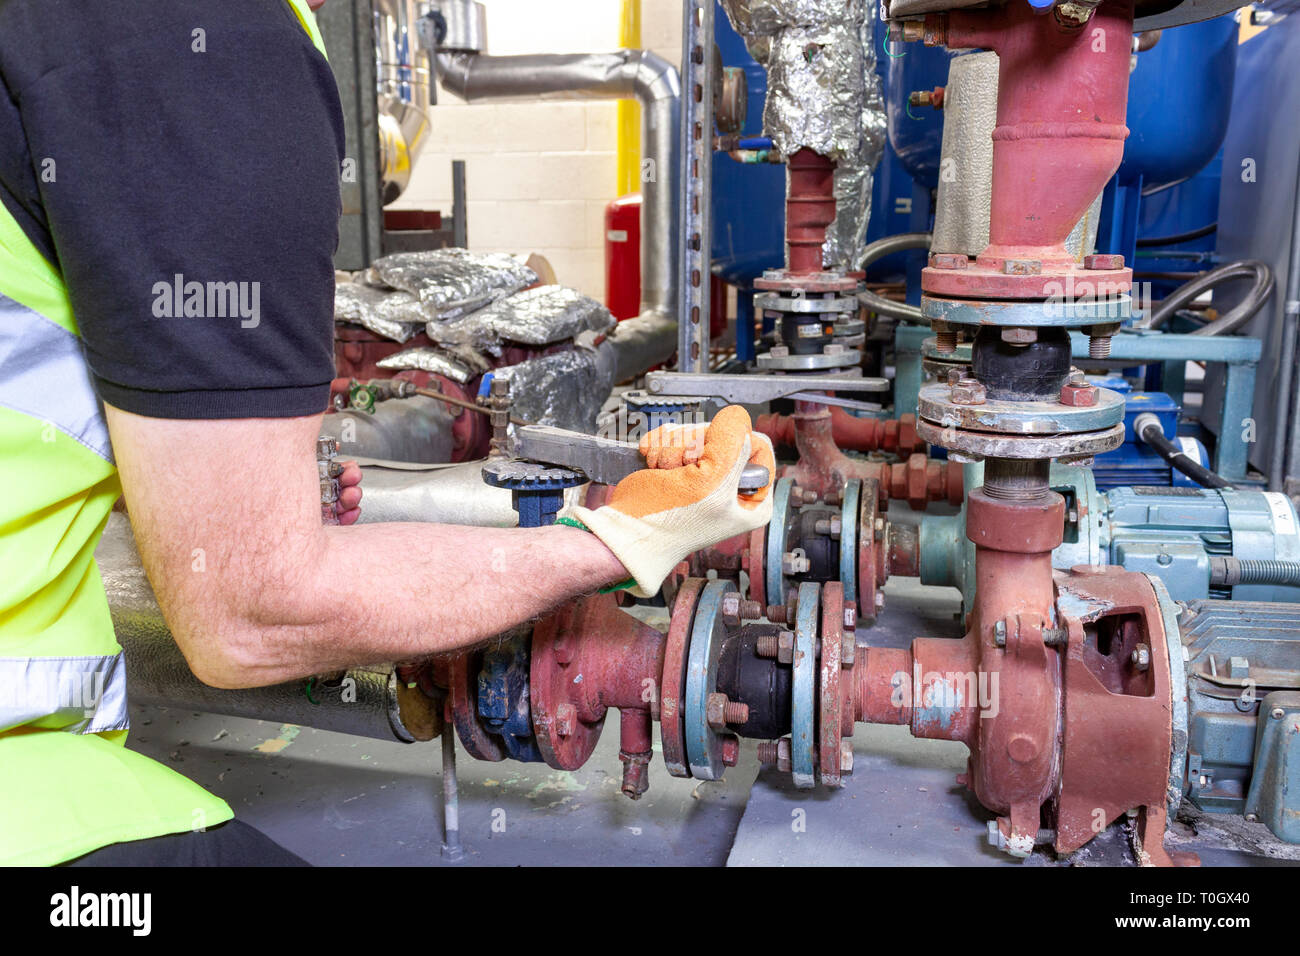 Ingénieur mécanique dans un gilet de sécurité haute visibilité travaille sur un ensemble de pompe dans une chaufferie Banque D'Images